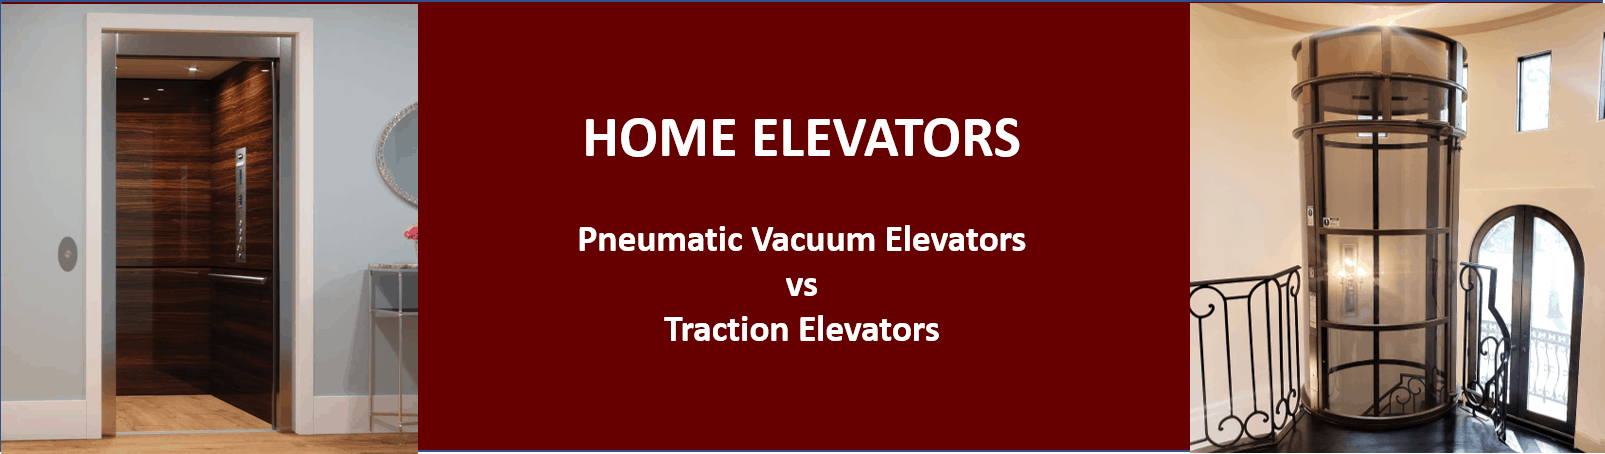 traction versus pneumatic vacuum elevators comparison